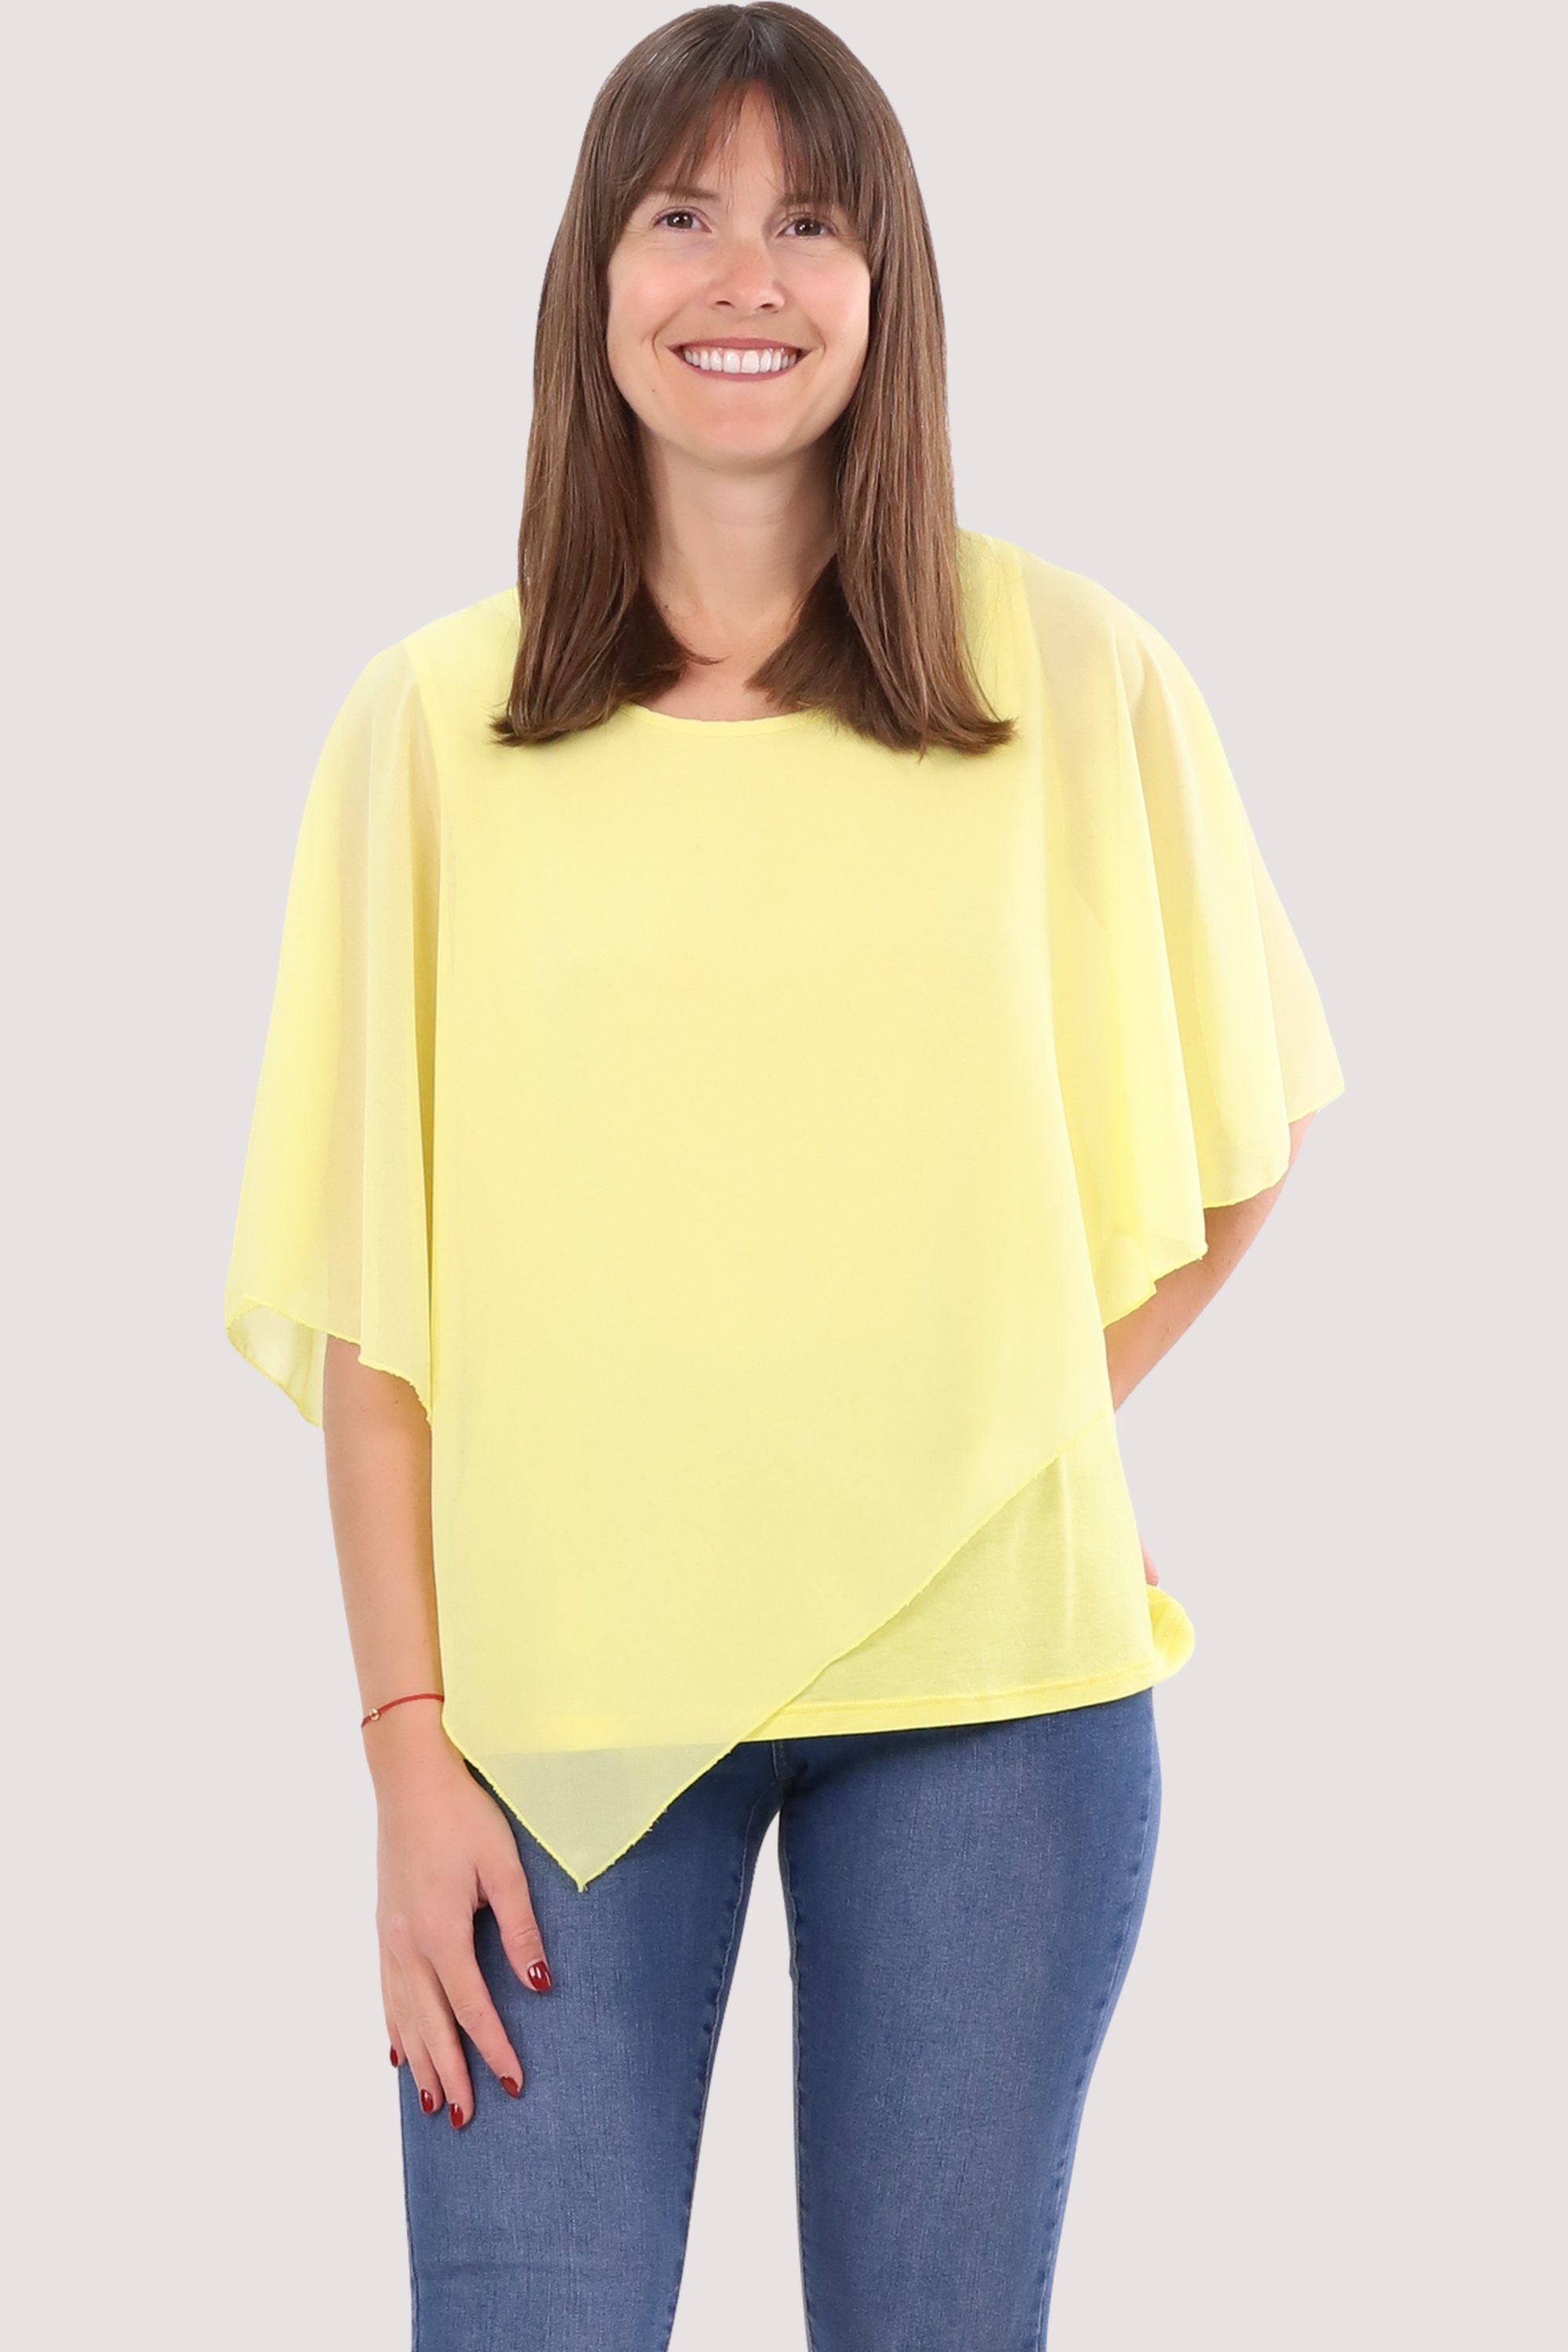 10732 geschnitten Chiffonbluse Schlupfbluse malito fashion Einheitsgröße asymmetrisch more than gelb Blusenshirt